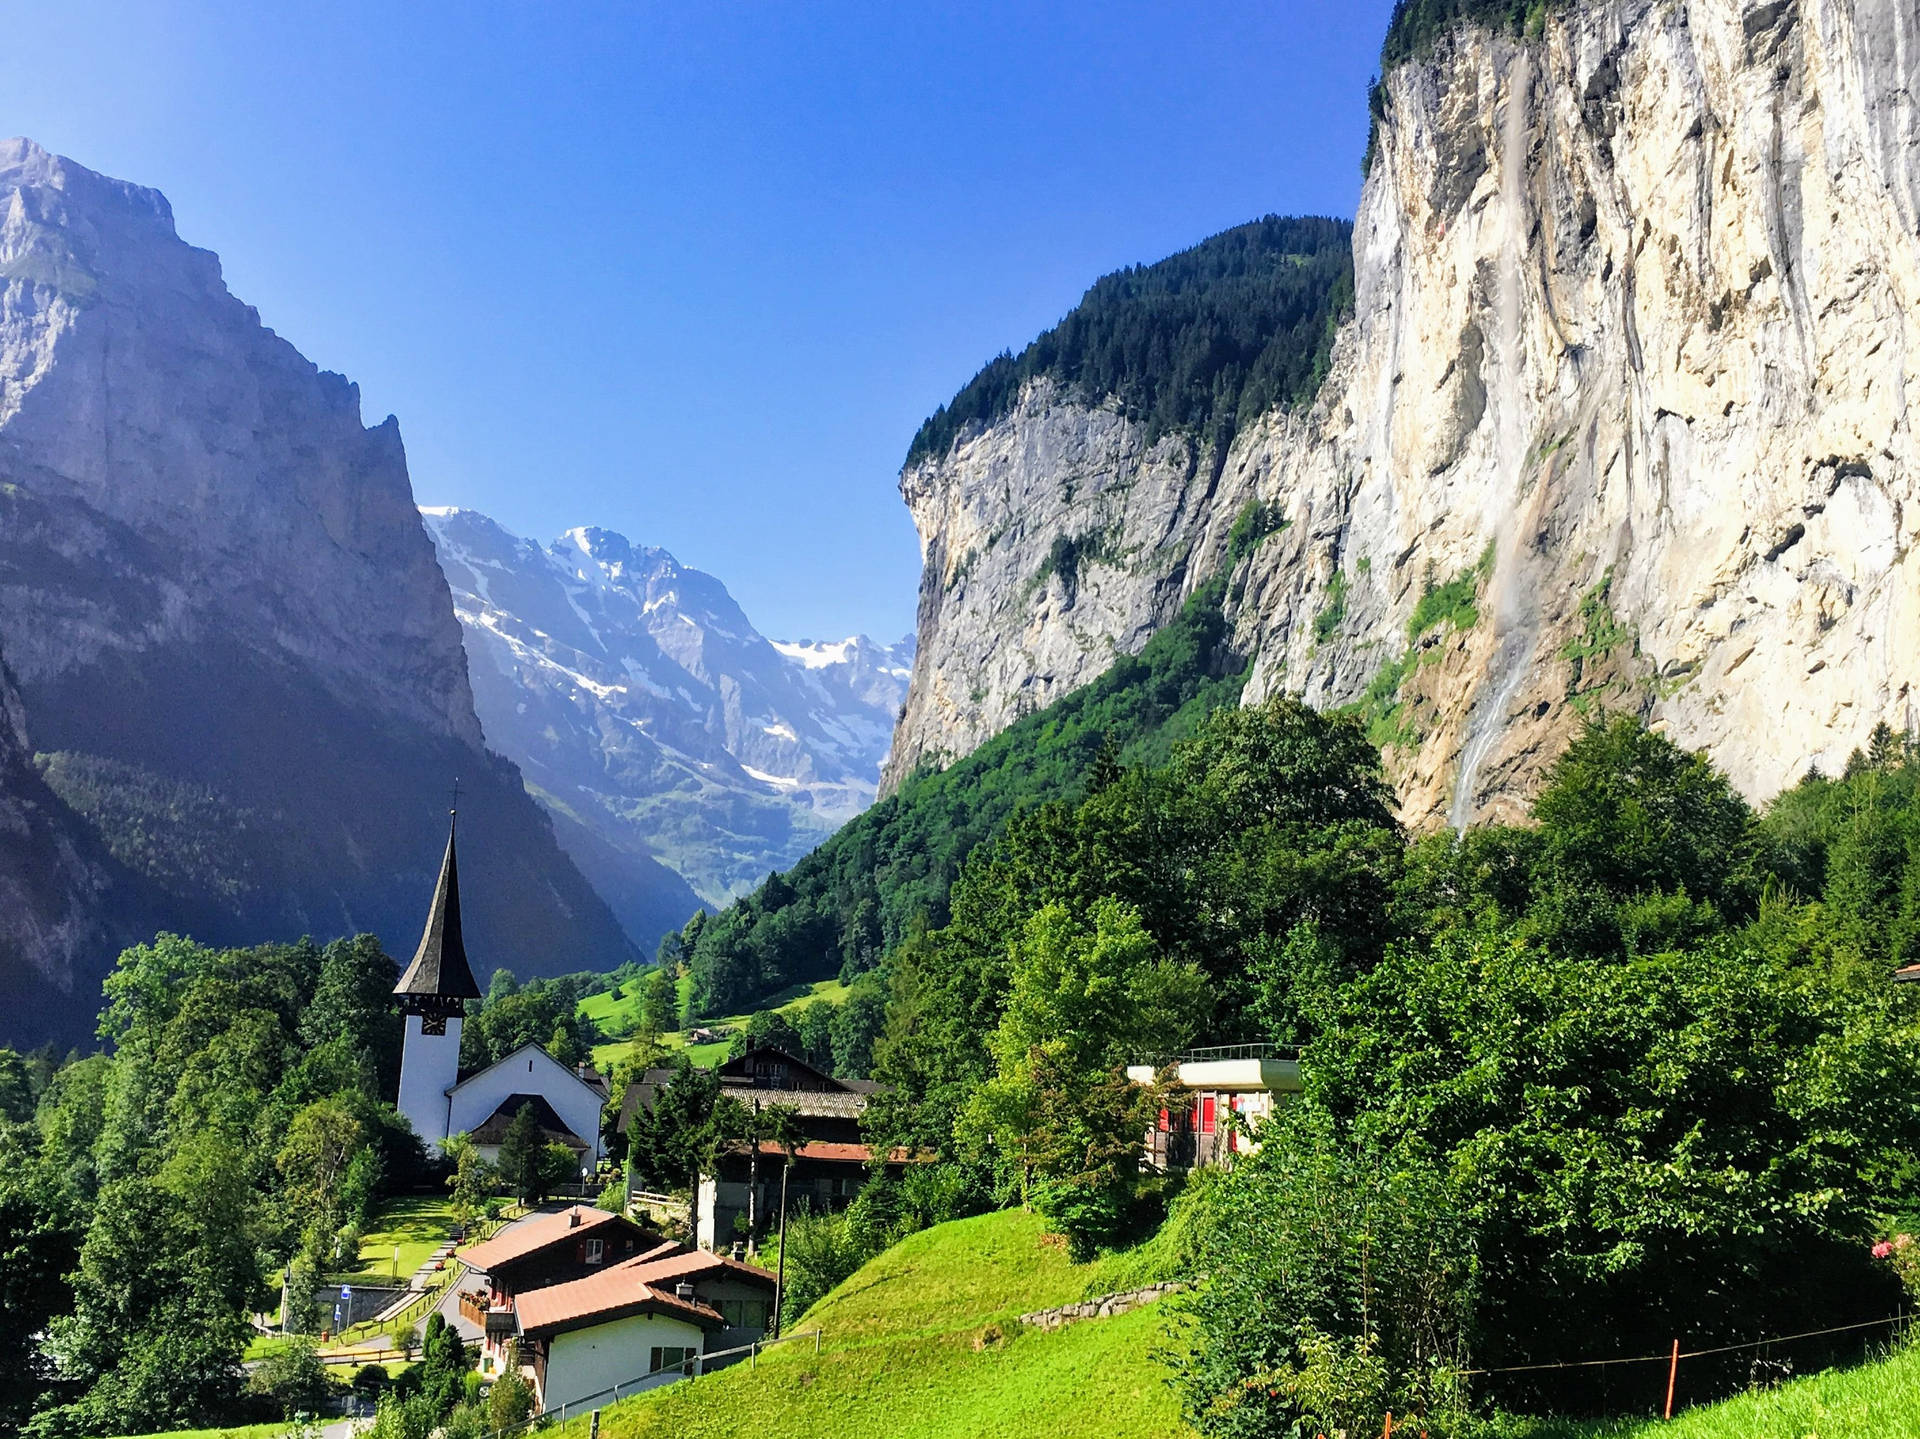 Schweiz Alperne Staubbach Falls Perspektive Tapet: Et tapet, der viser udsigten til det berømte Staubbach Falls i Schweiz Alperne. Wallpaper